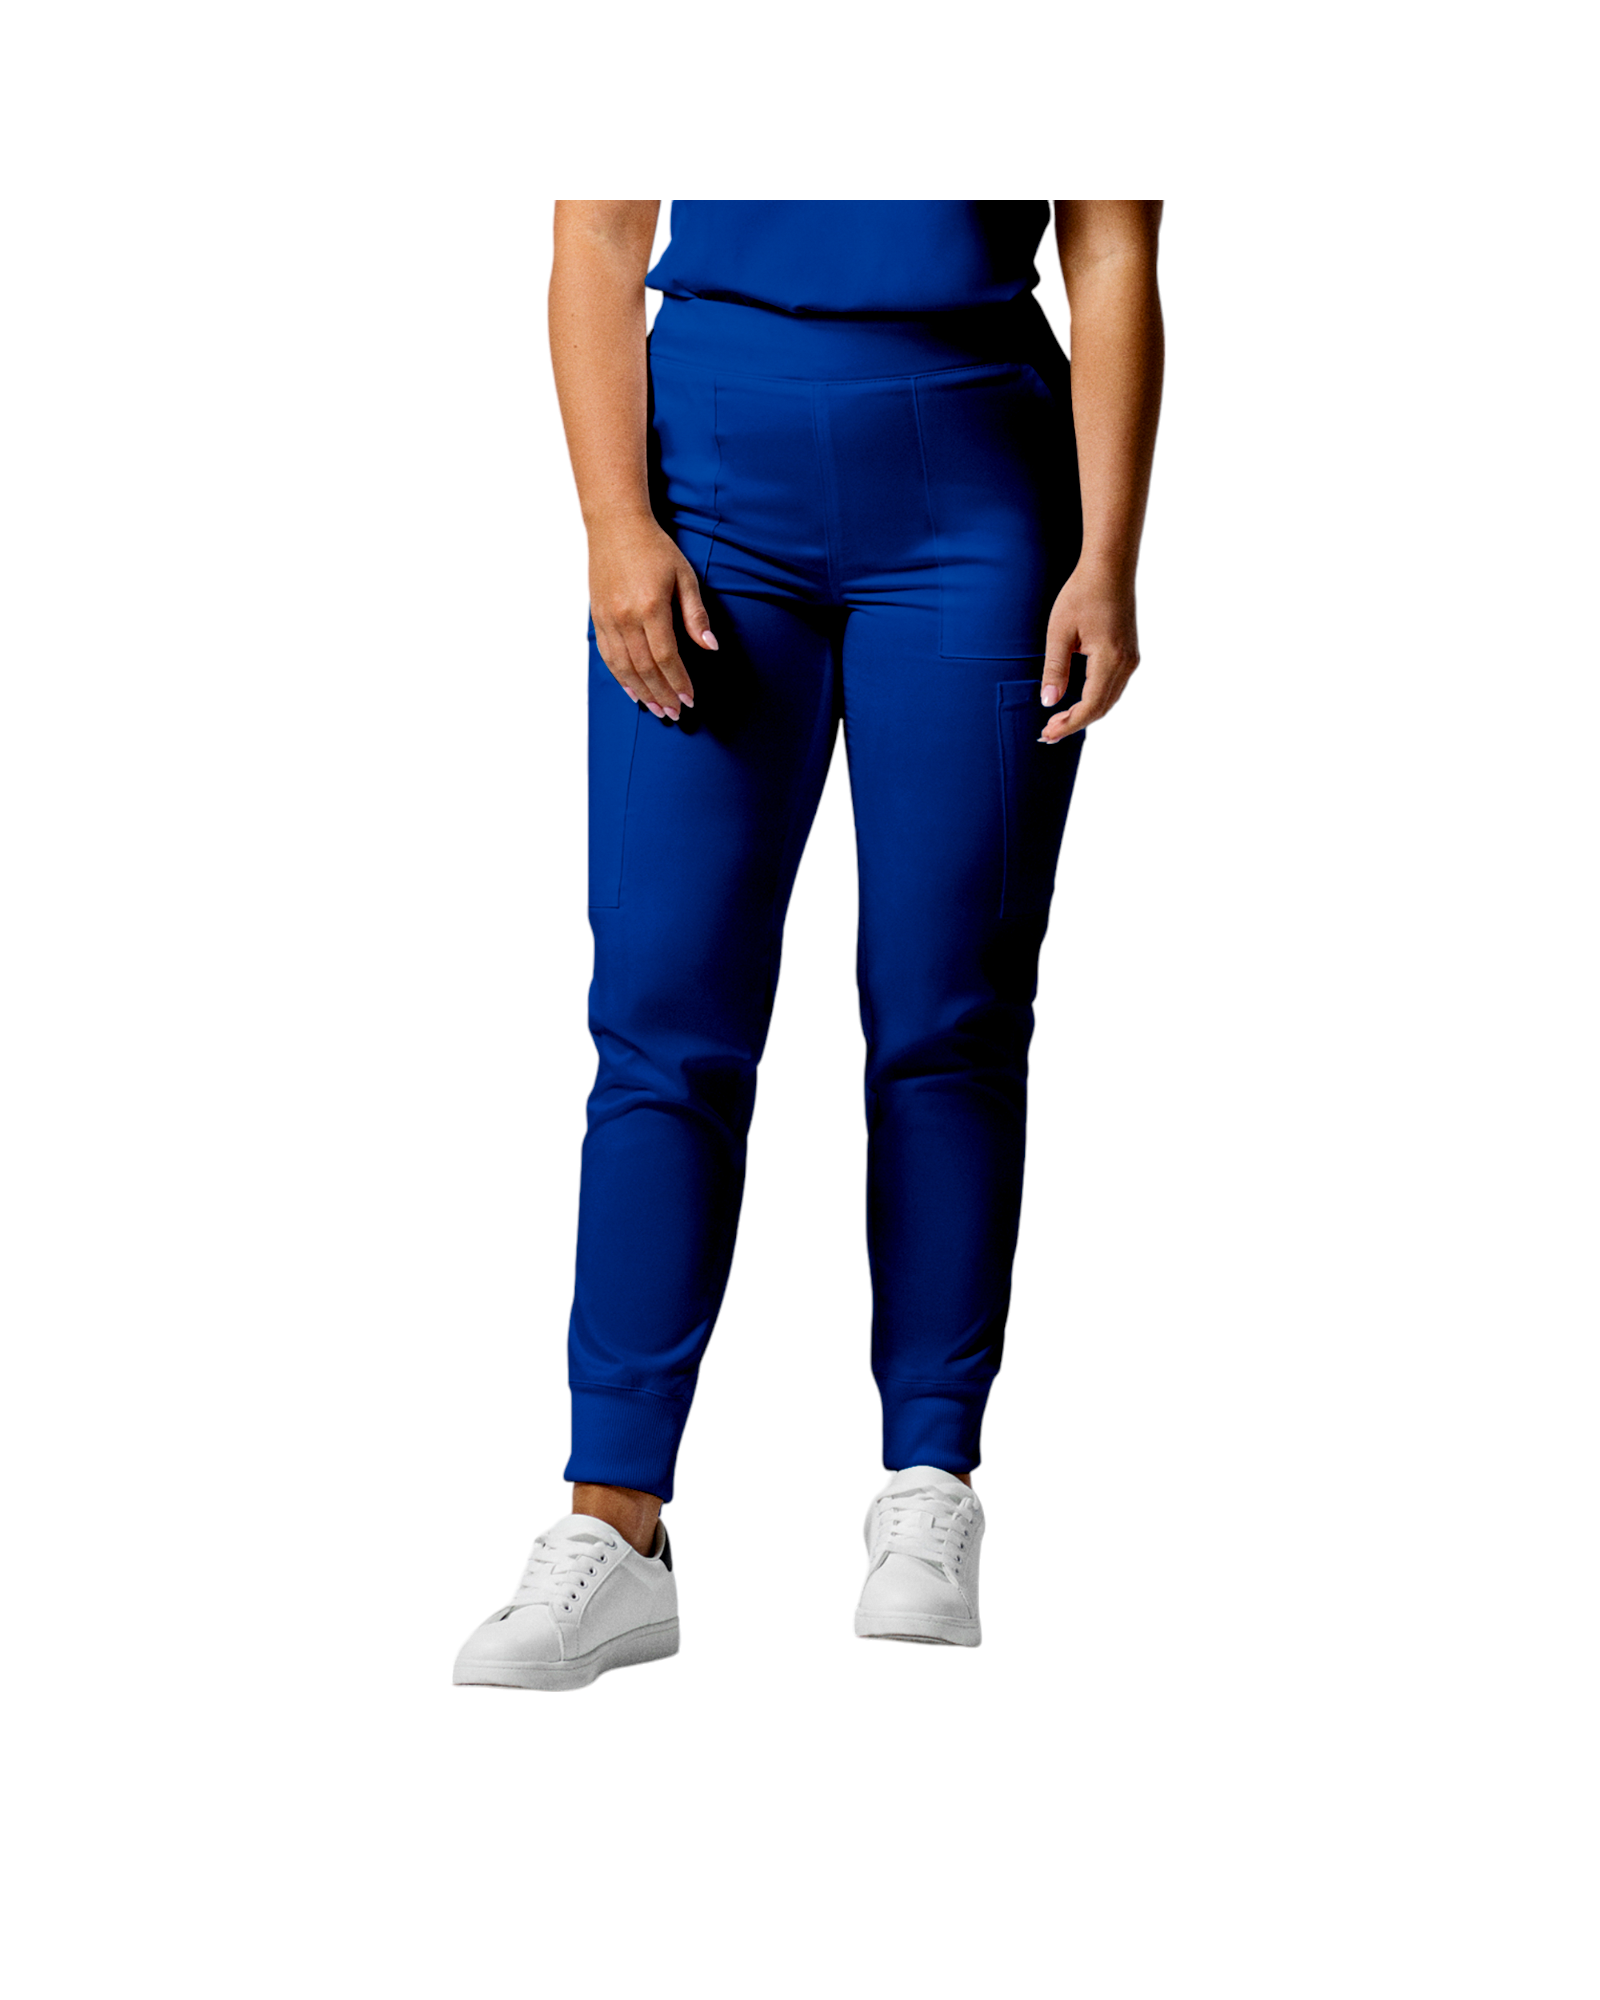 Pantalon de style jogger 6 poches pour femmes Landau Proflex #LB406 couleur Bleu galaxie